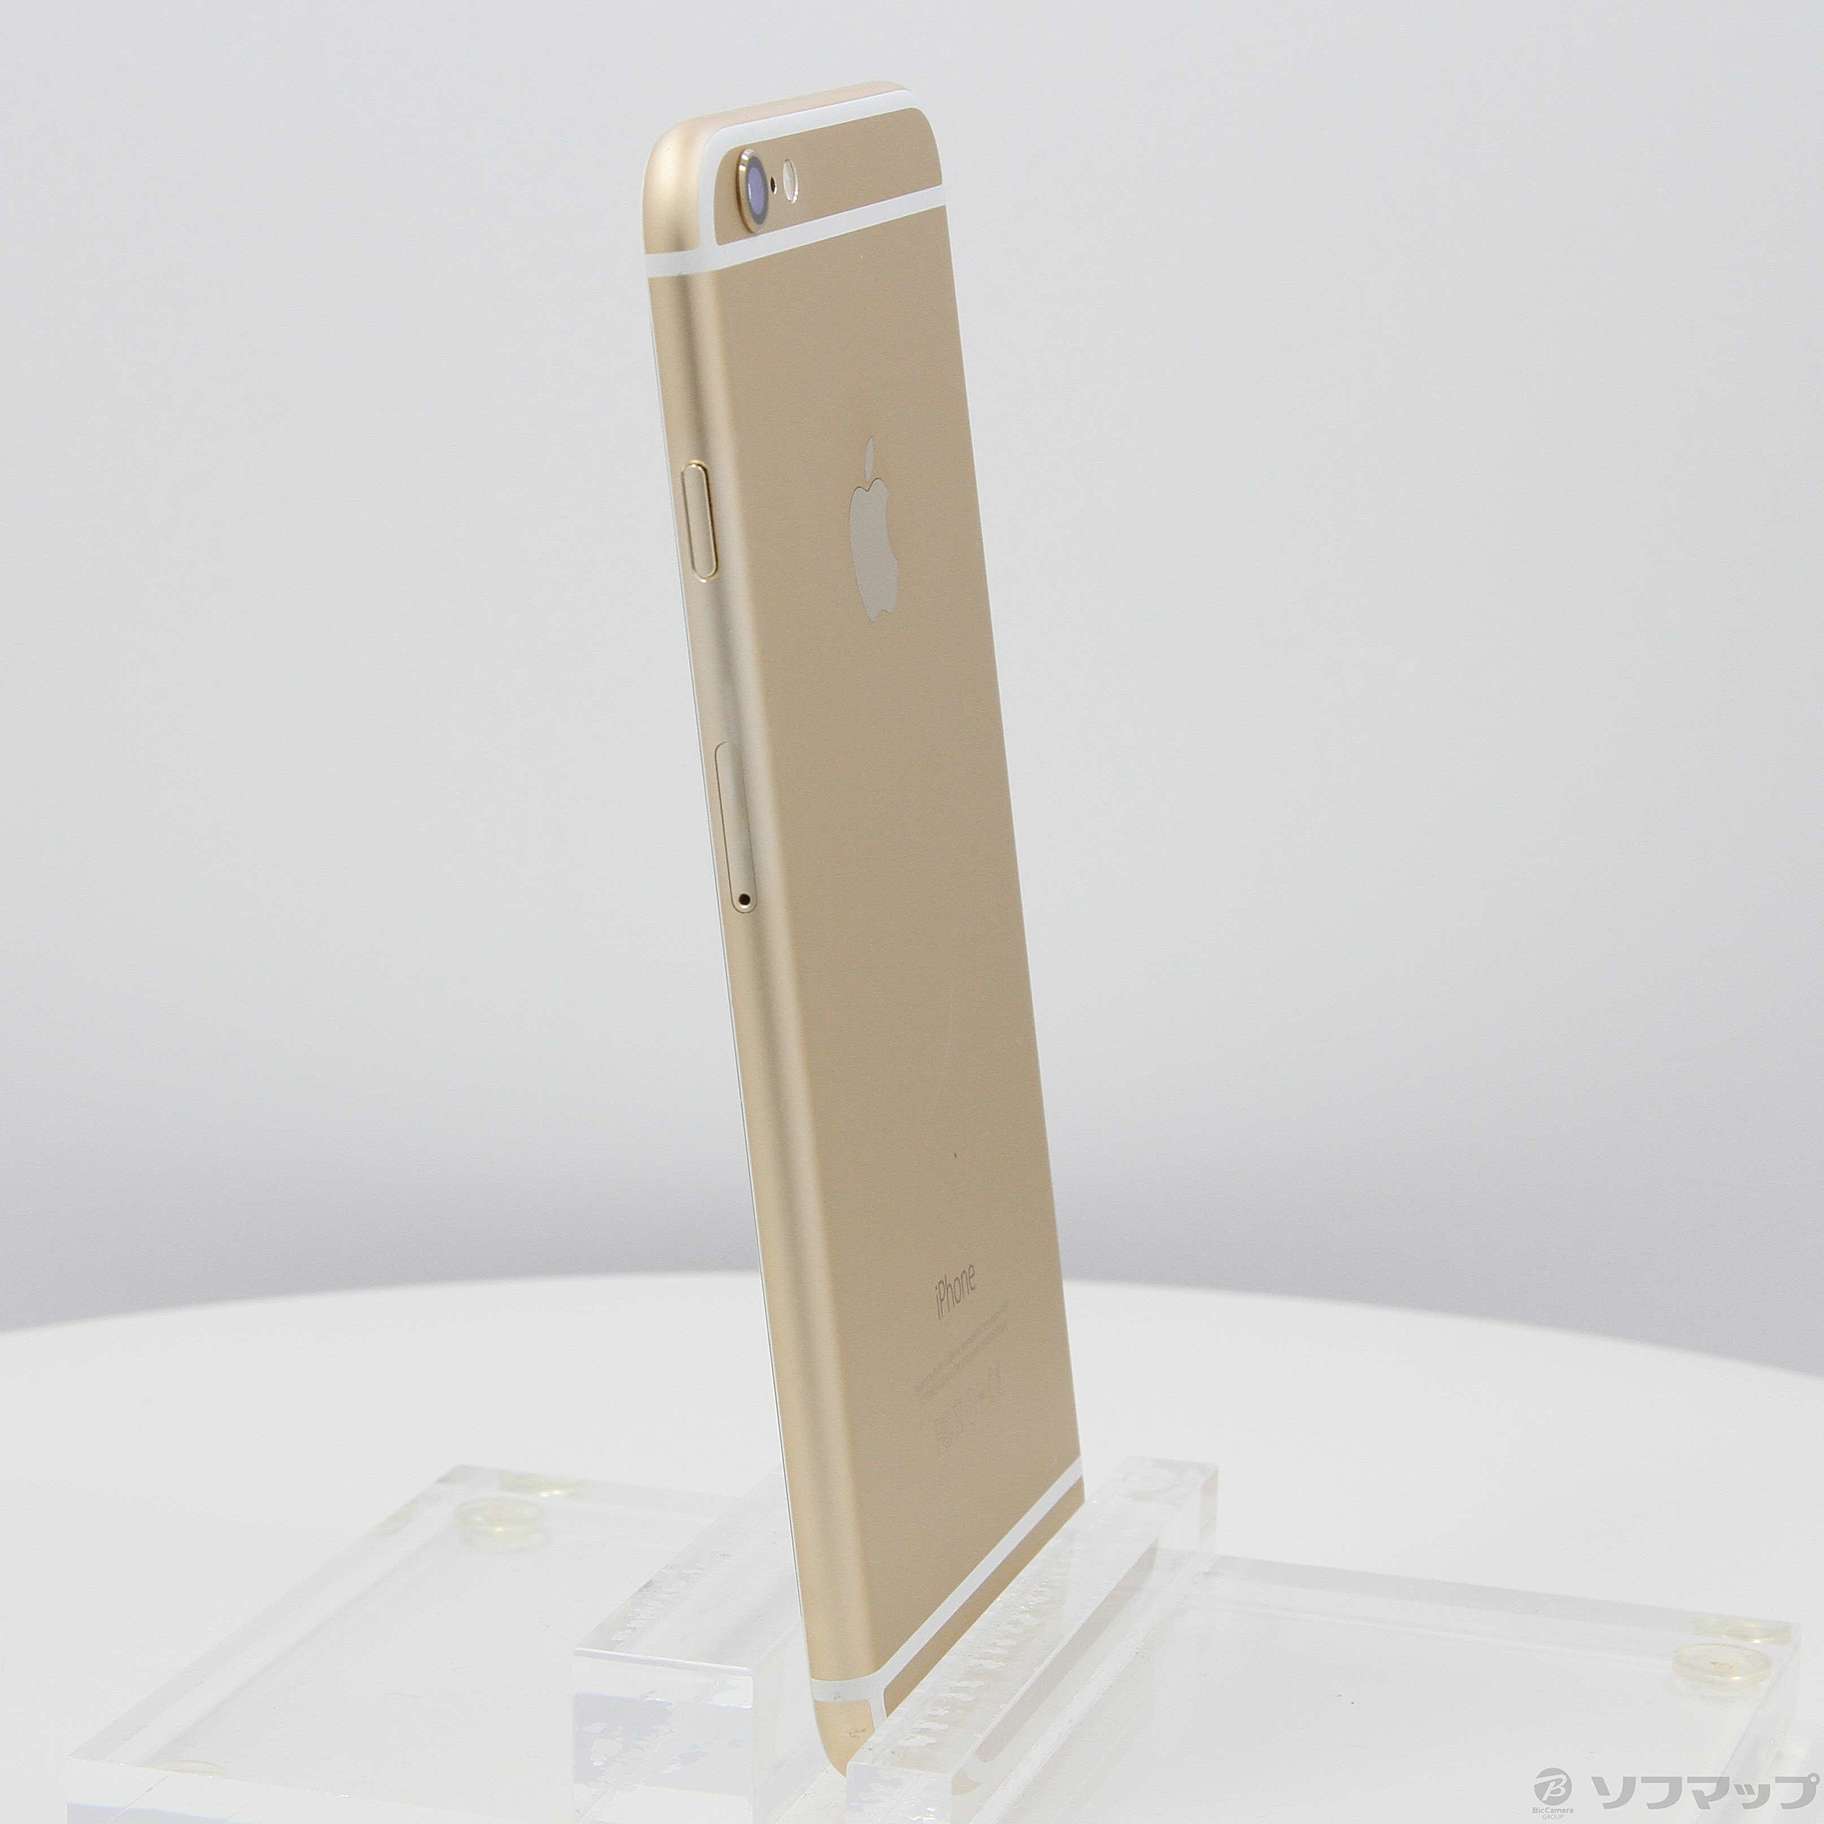 iPhone 6 Plus Gold 64GB MGAK2J/A ◆新品未使用◆